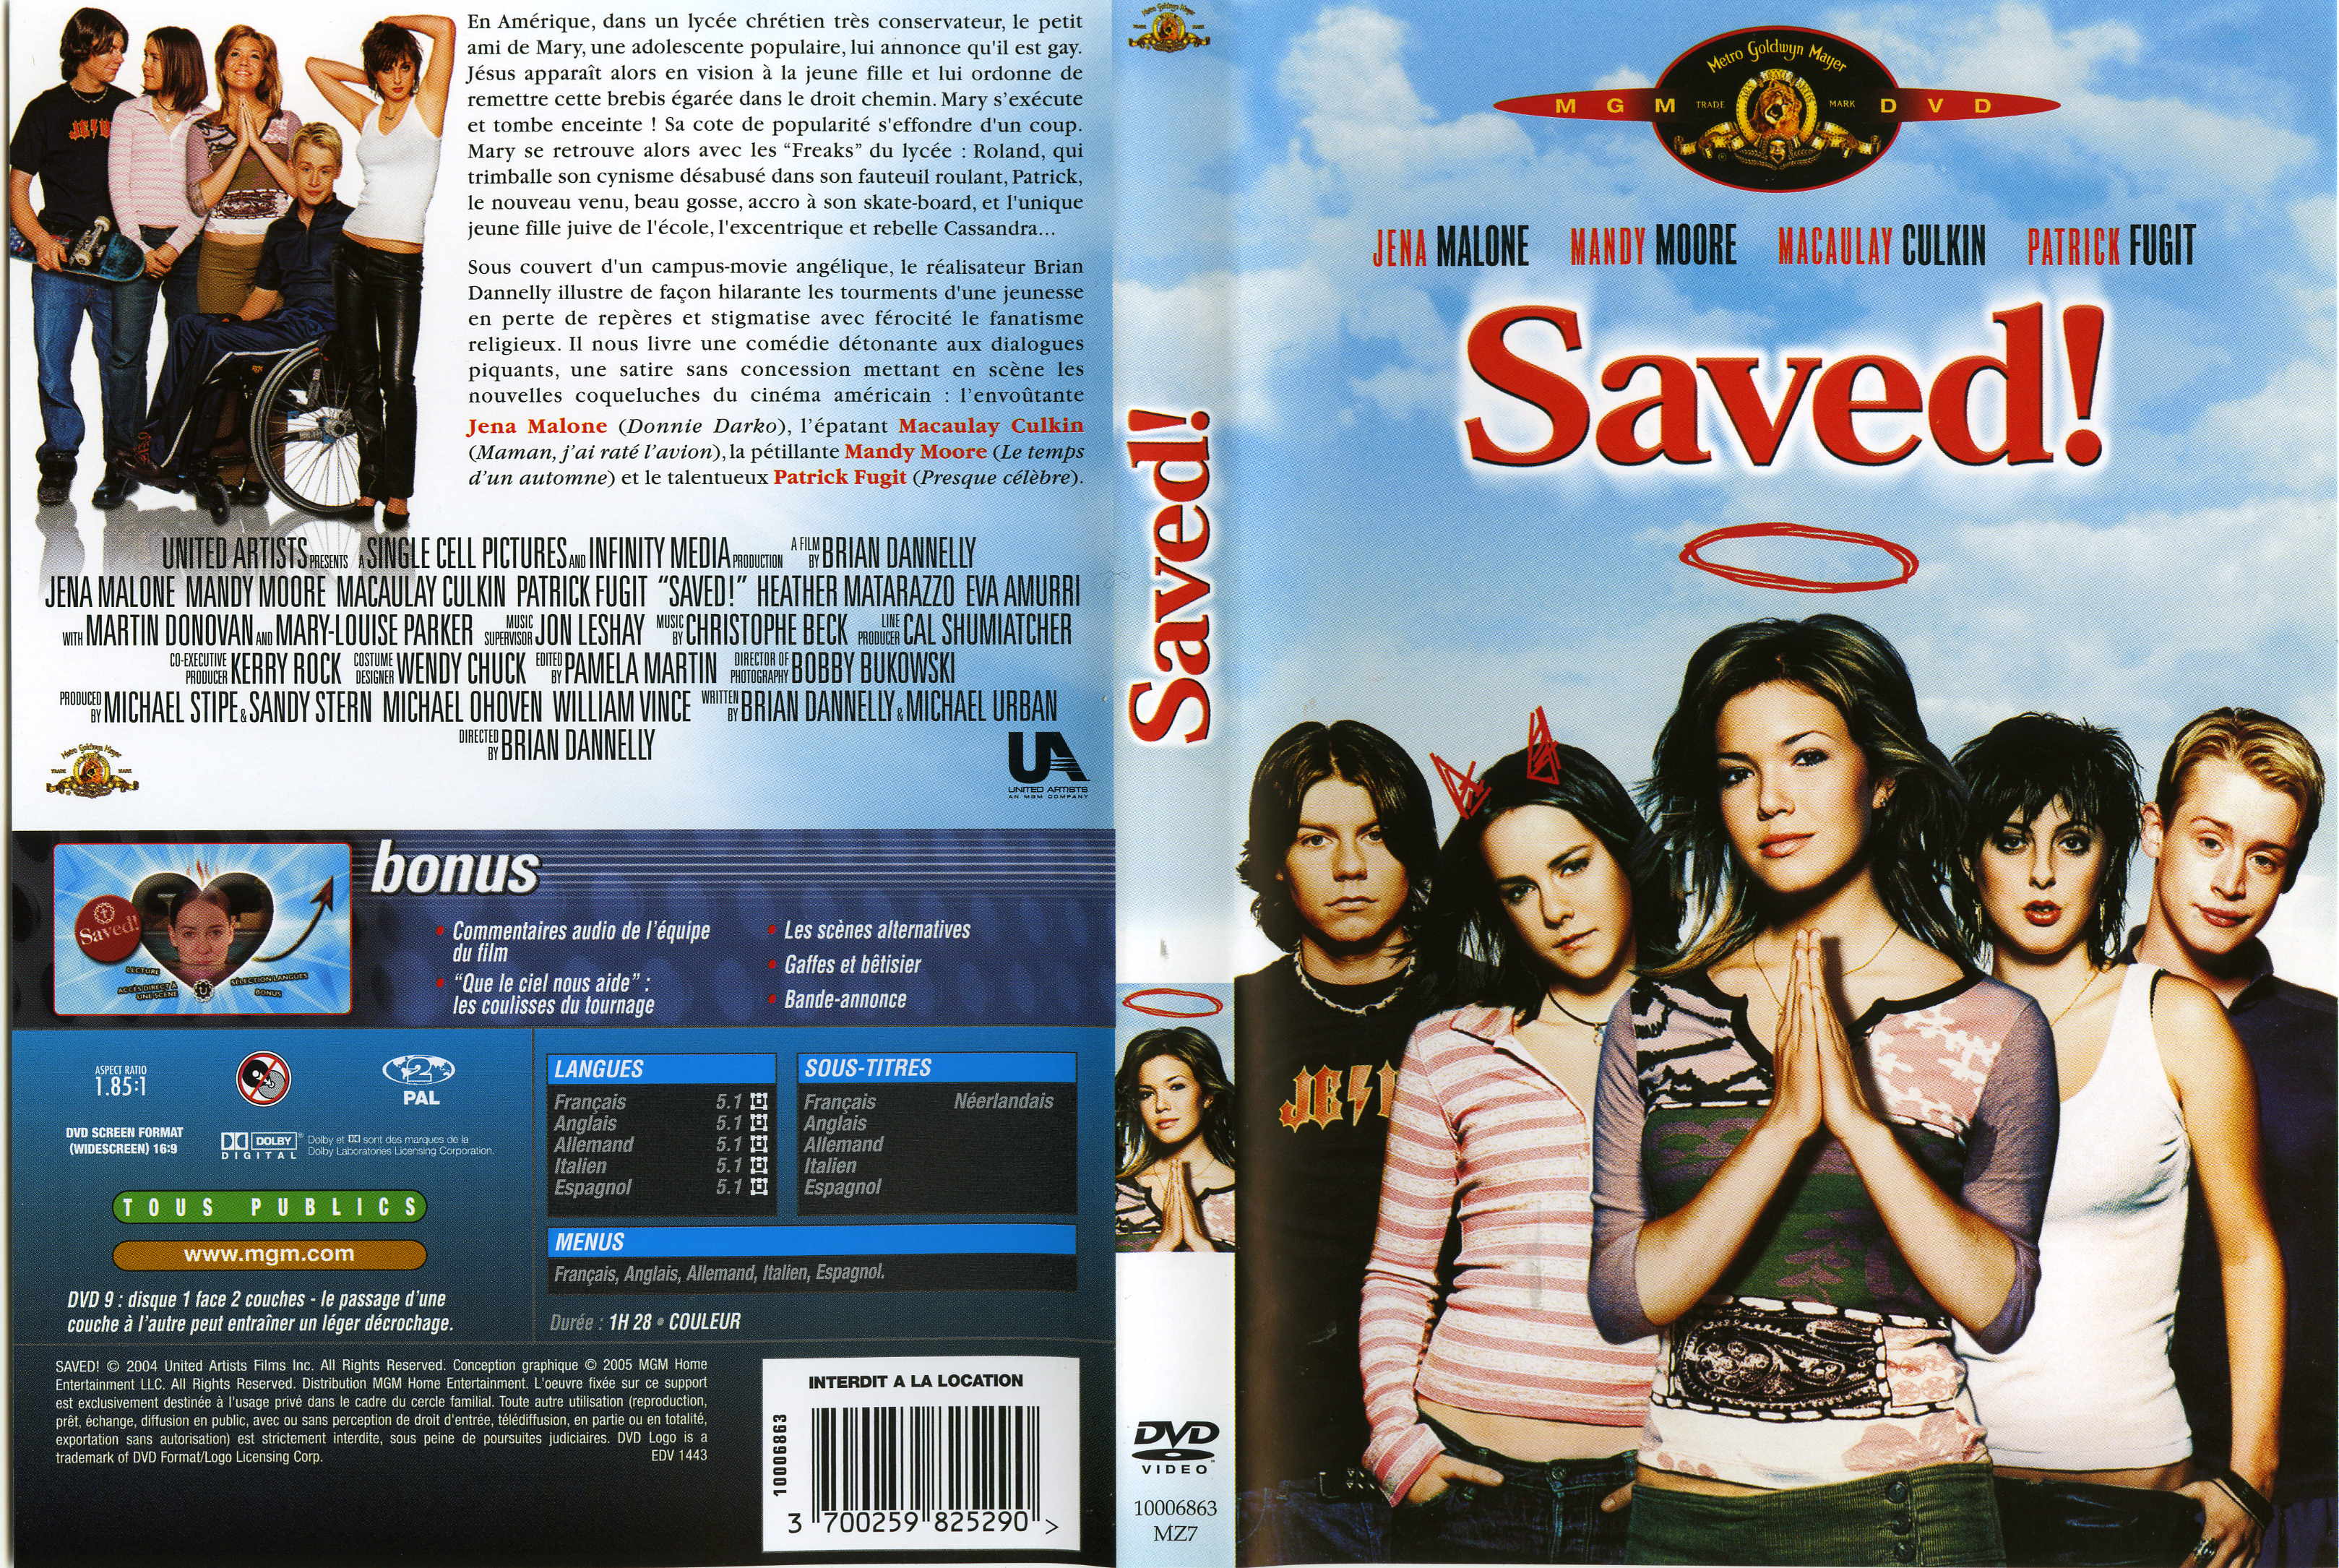 Jaquette DVD Saved v2